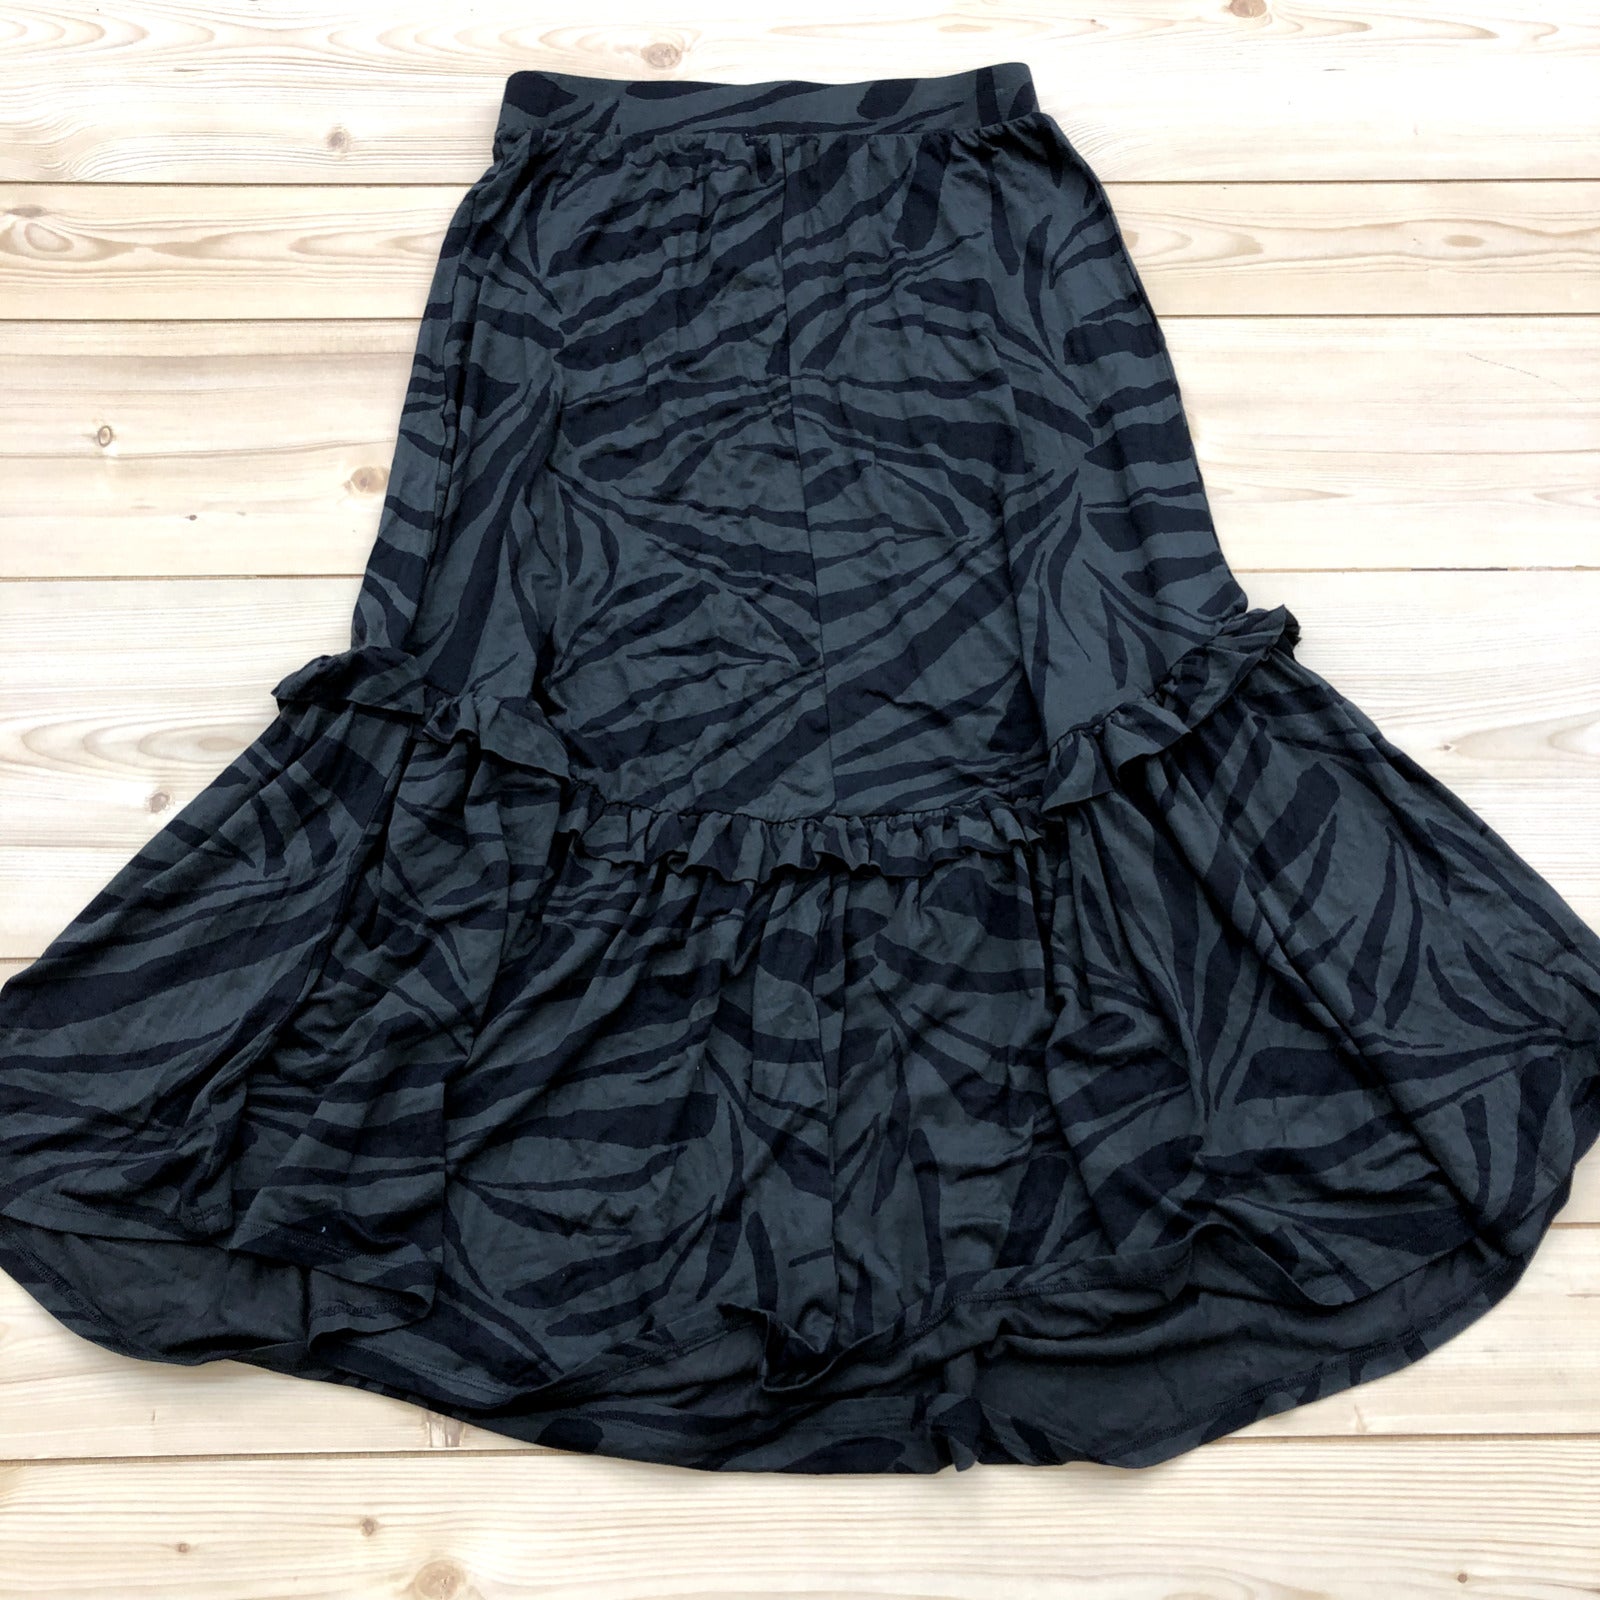 New Evereve Black Grey Tropical Zebra Print Ruffled Skirt Women's Size M